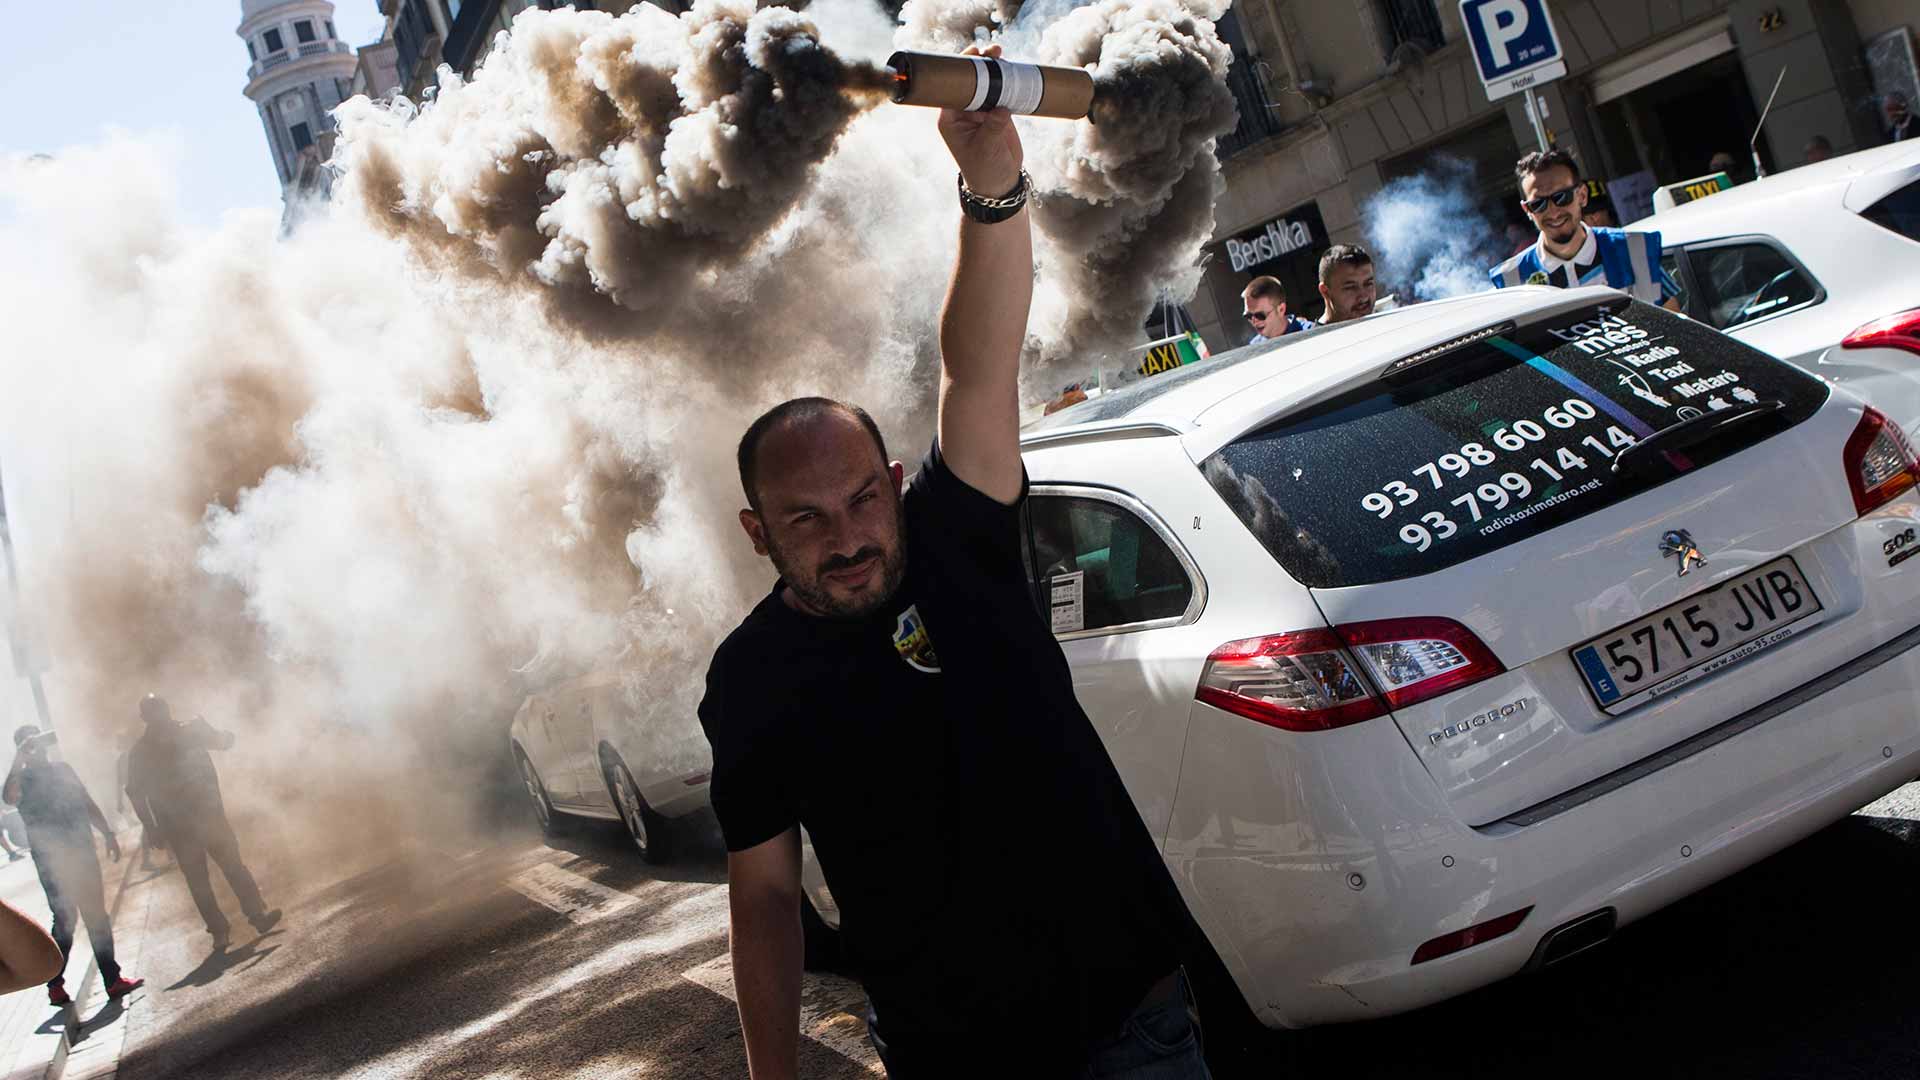 Cabify demanda a Podemos por "dañar su honor" durante la huelga de taxis